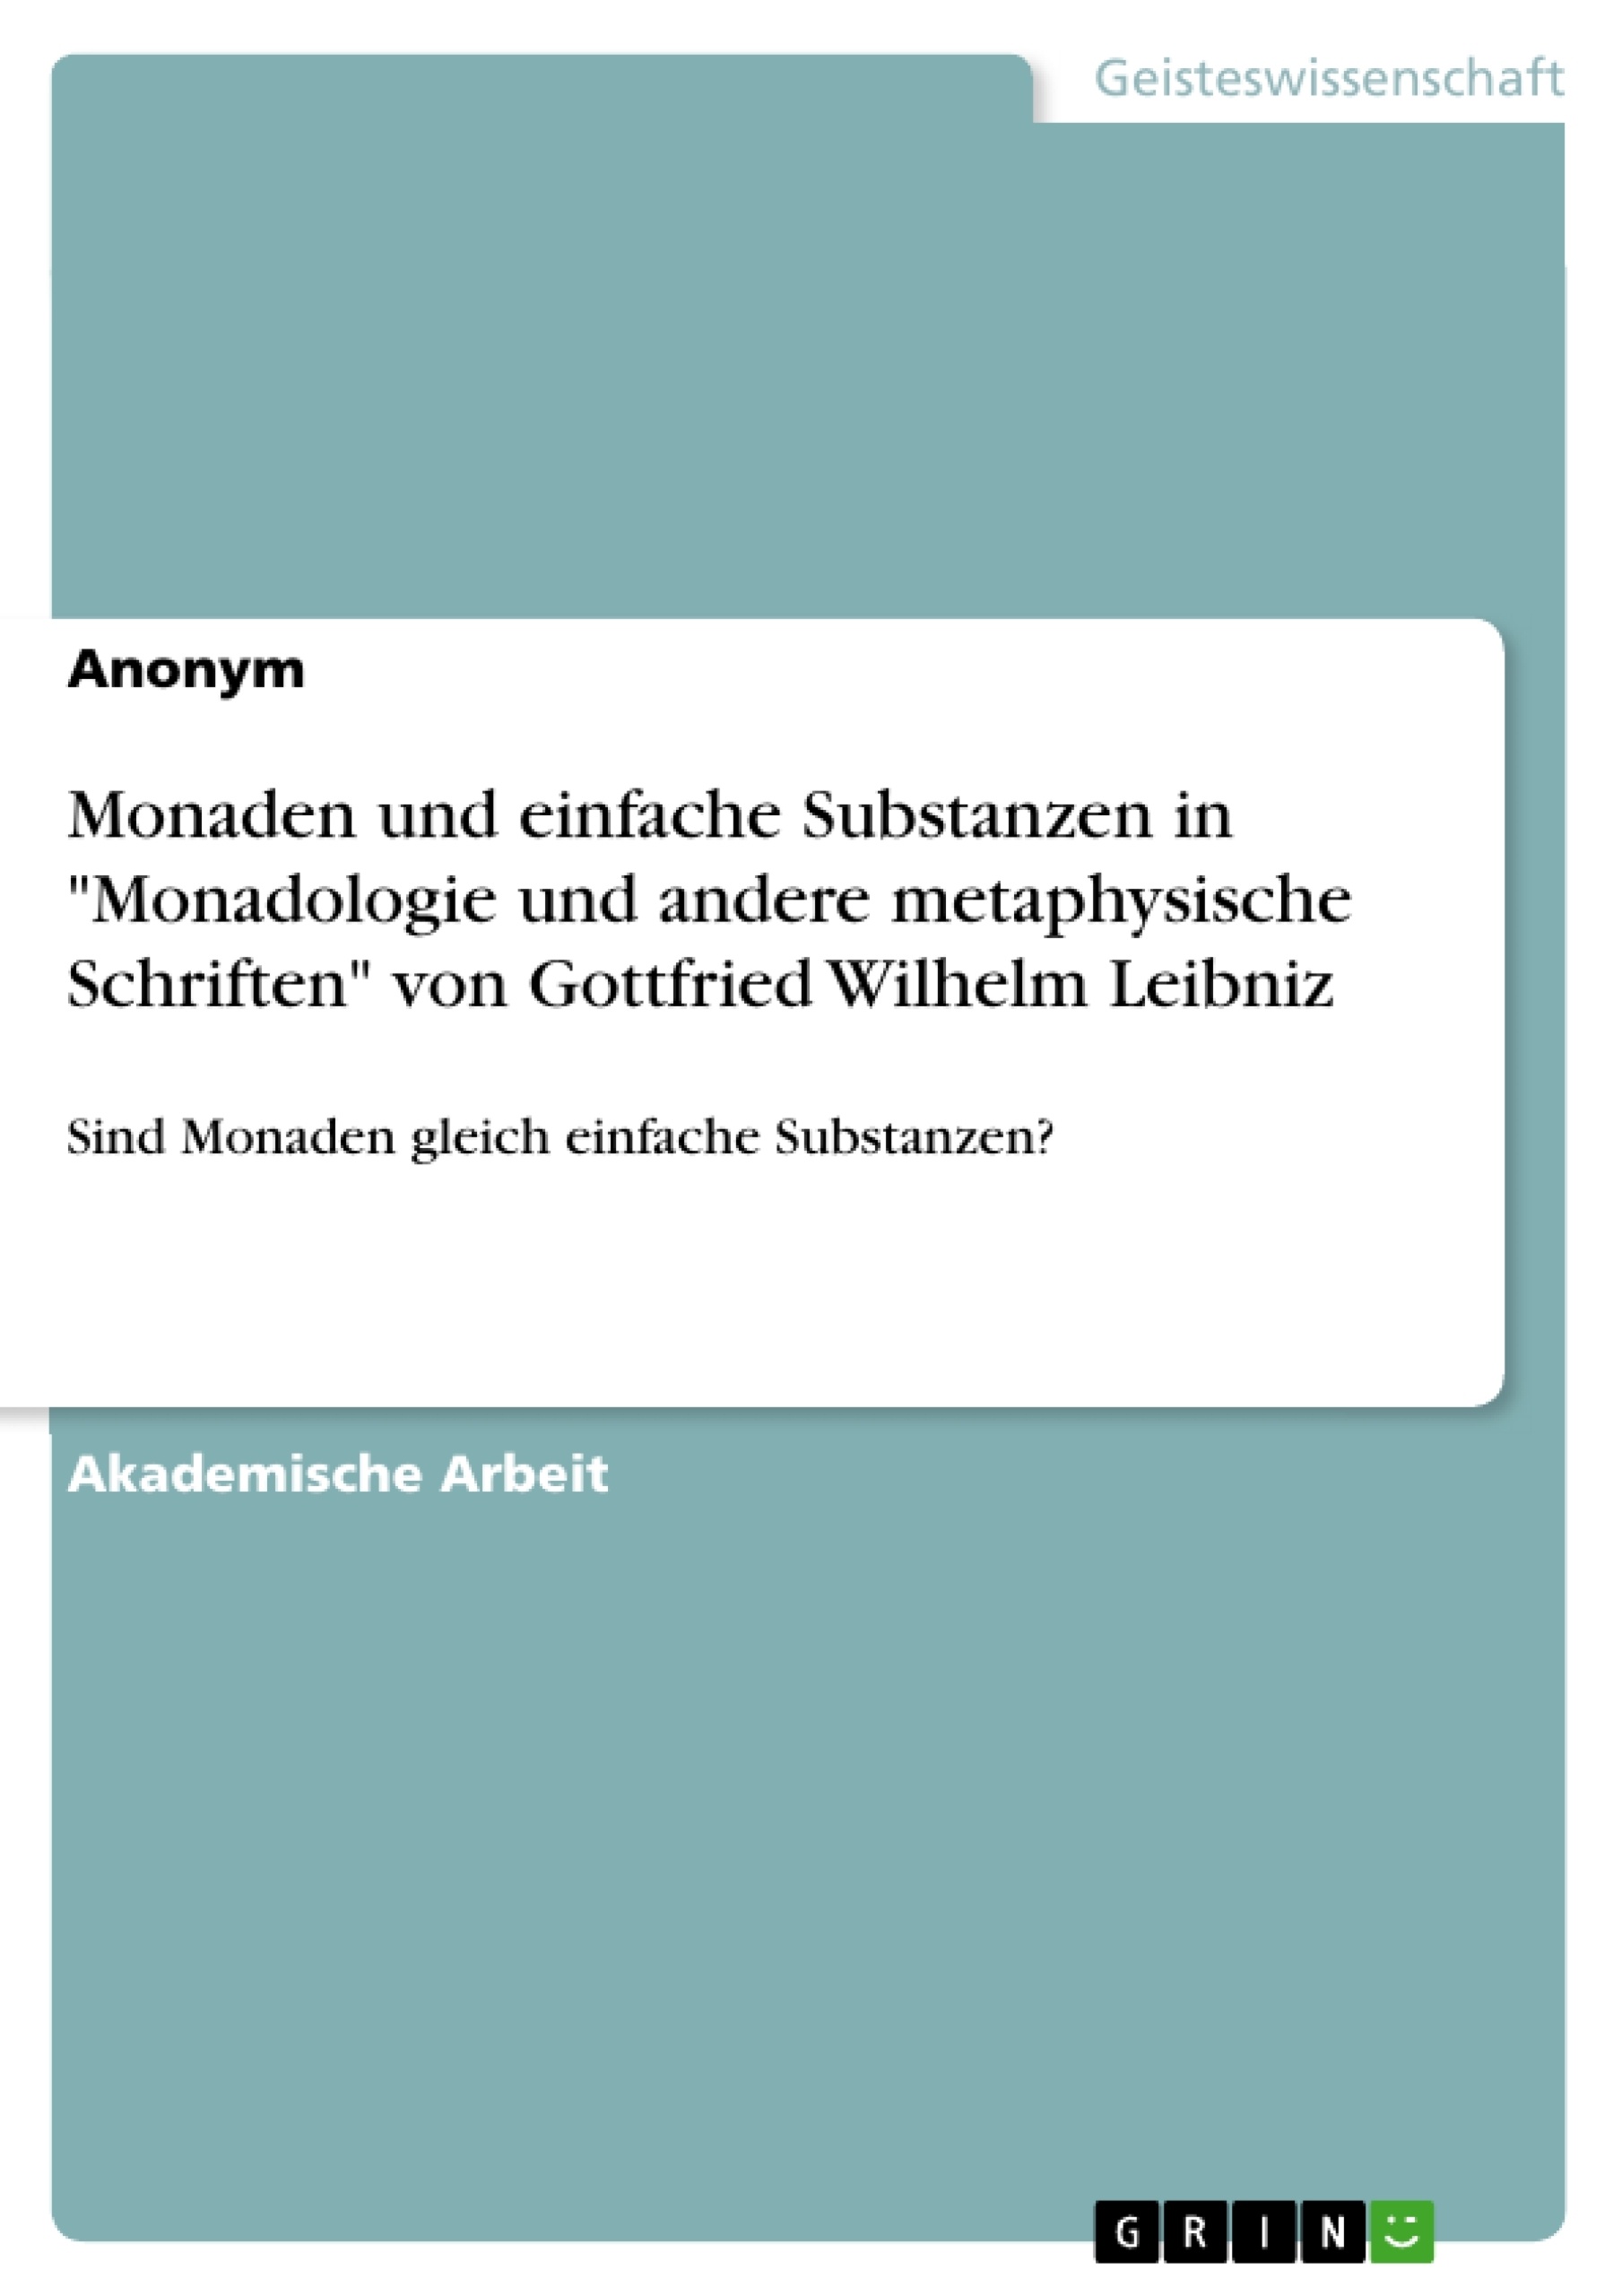 Titel: Monaden und einfache Substanzen in "Monadologie und andere metaphysische Schriften" von Gottfried Wilhelm Leibniz